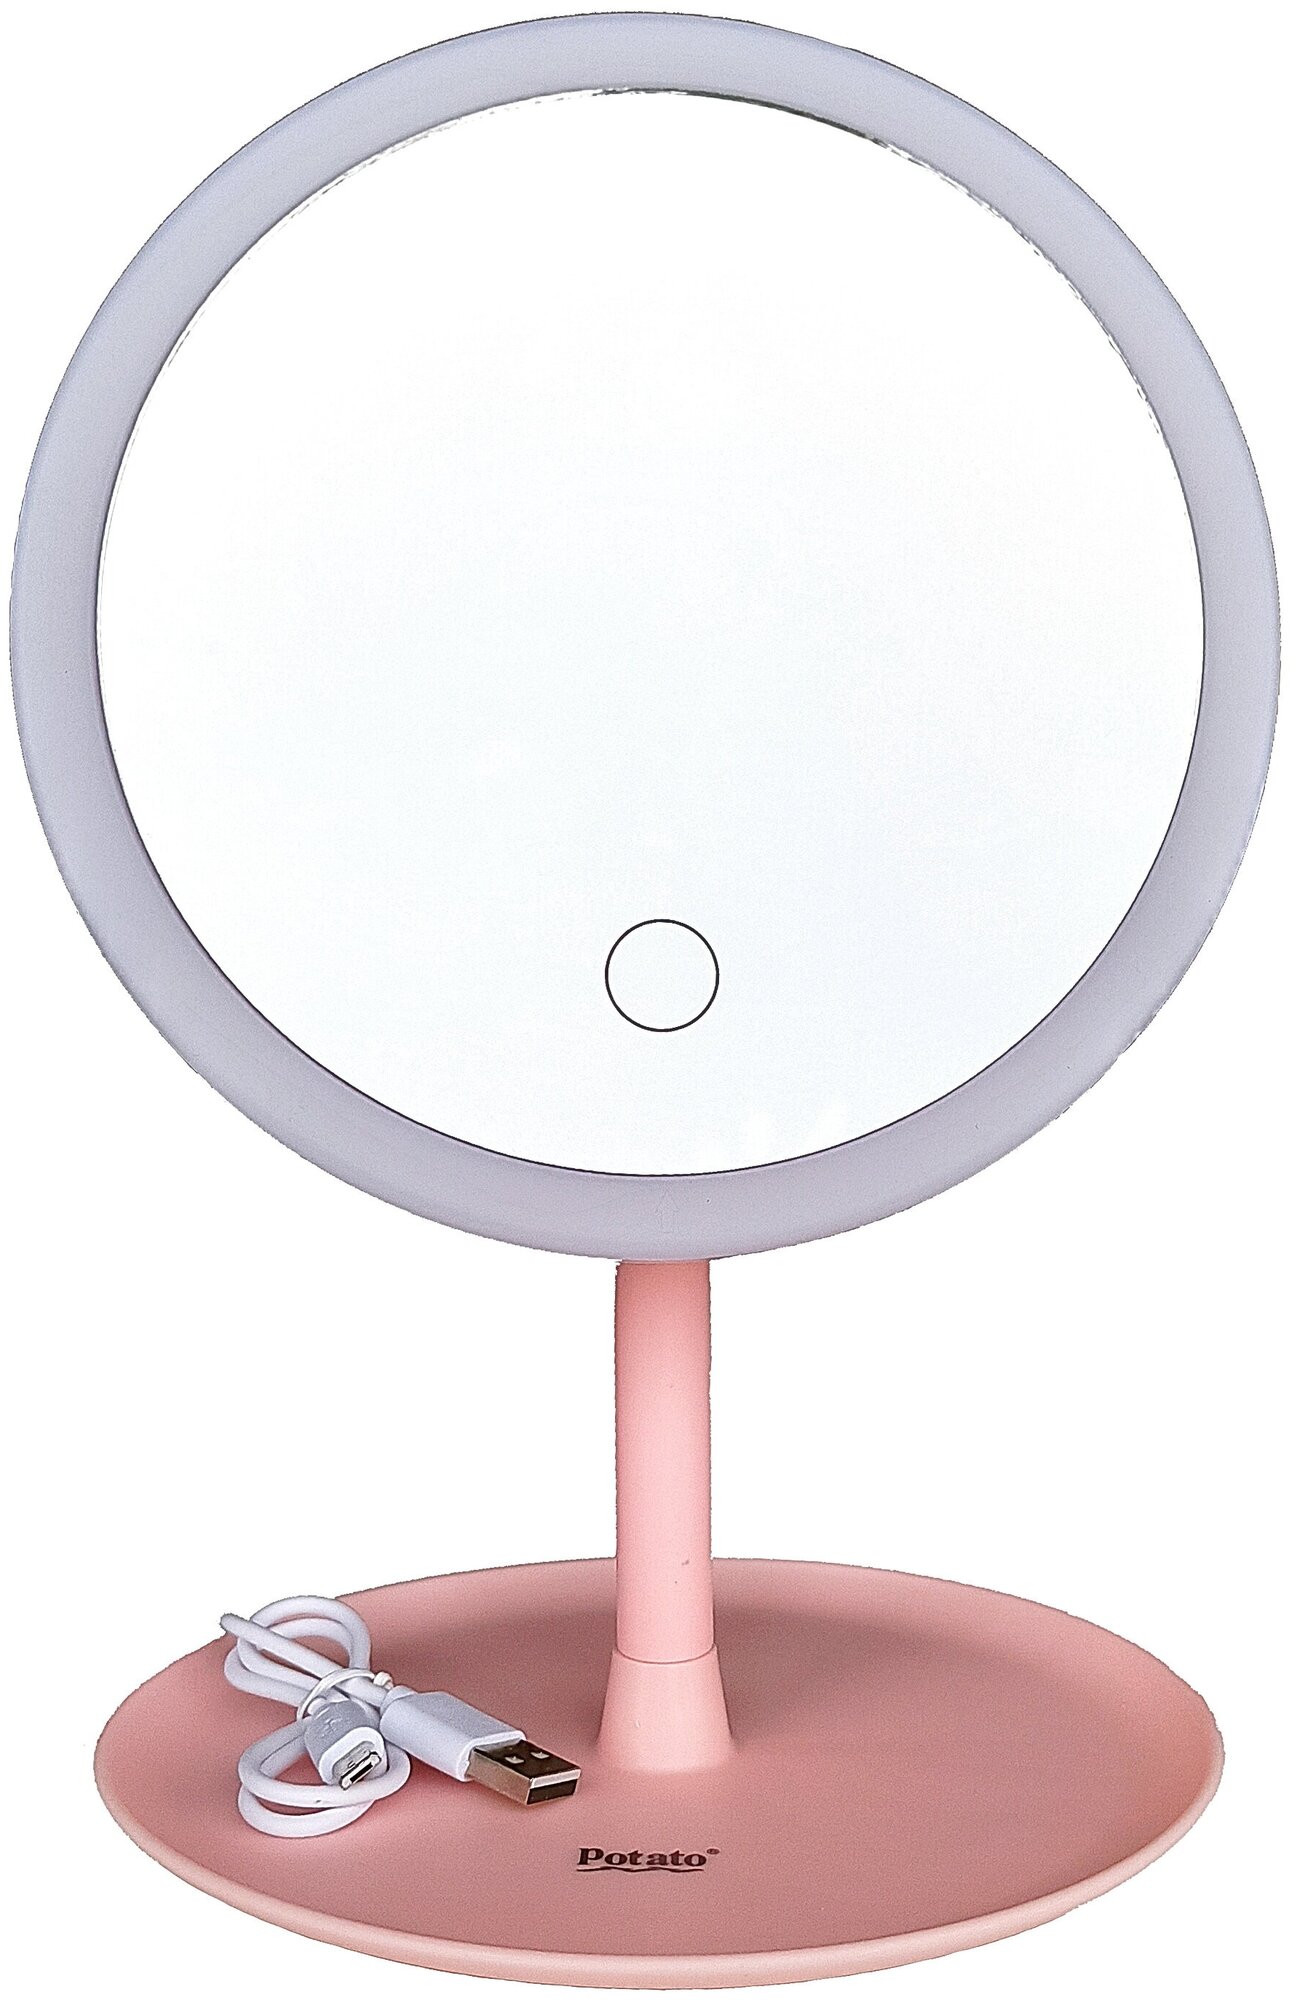 Зеркало косметическое Potato P796-5E с подсветкой круглое розовое